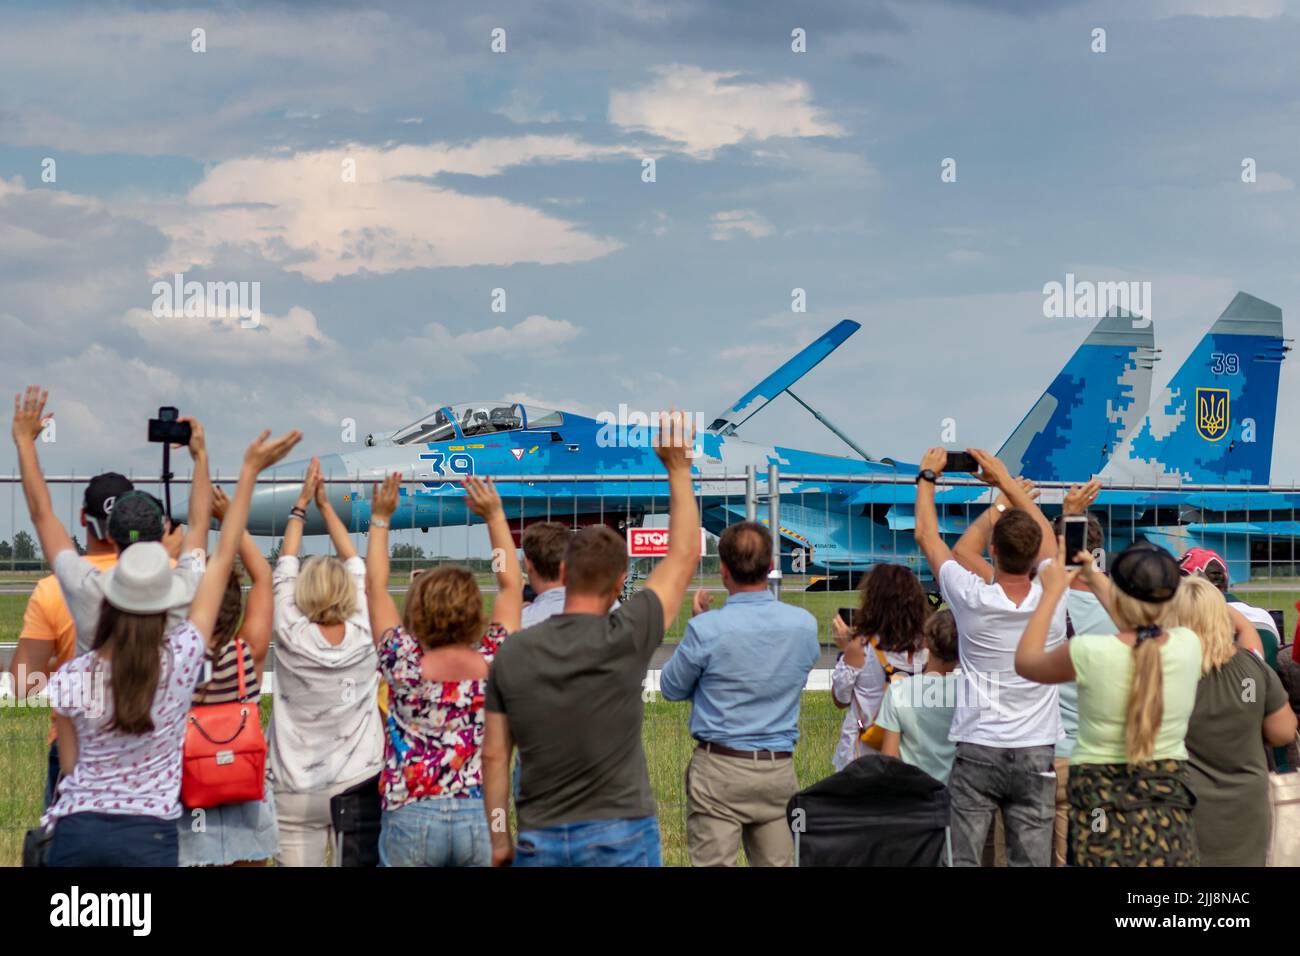 SIAULIAI / LITAUEN - 27. Juli 2019: Zuschauer begrüßen und winken den ukrainischen Luftstreitkräften Sukhoi Su-27, die auf dem Rollfeld des Kampfflugzeugs rollten Stockfoto